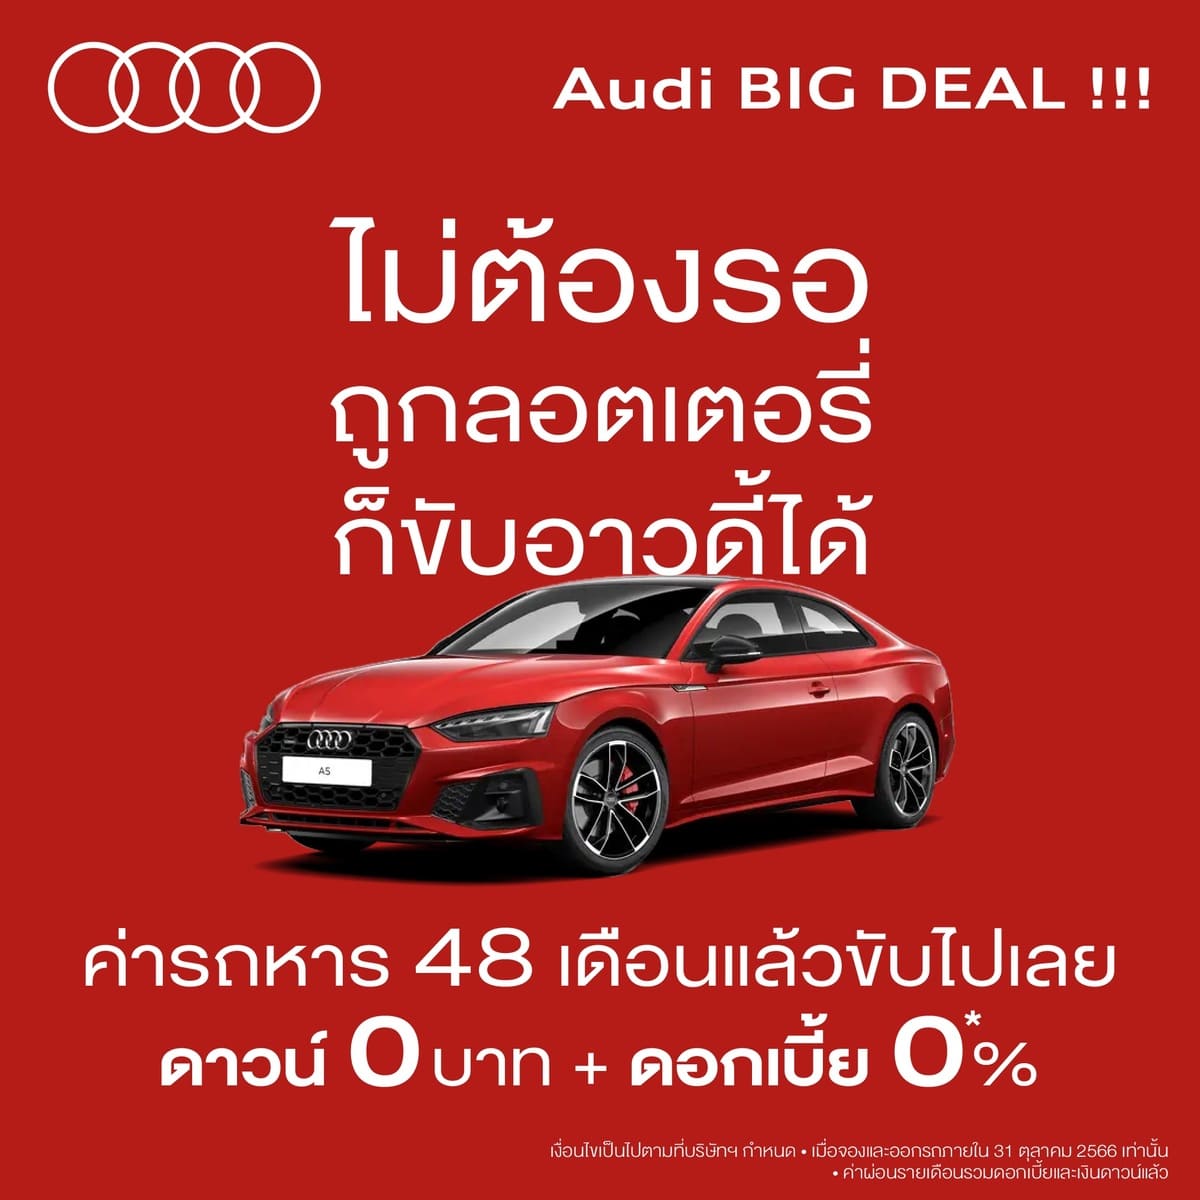 Audi Thailand